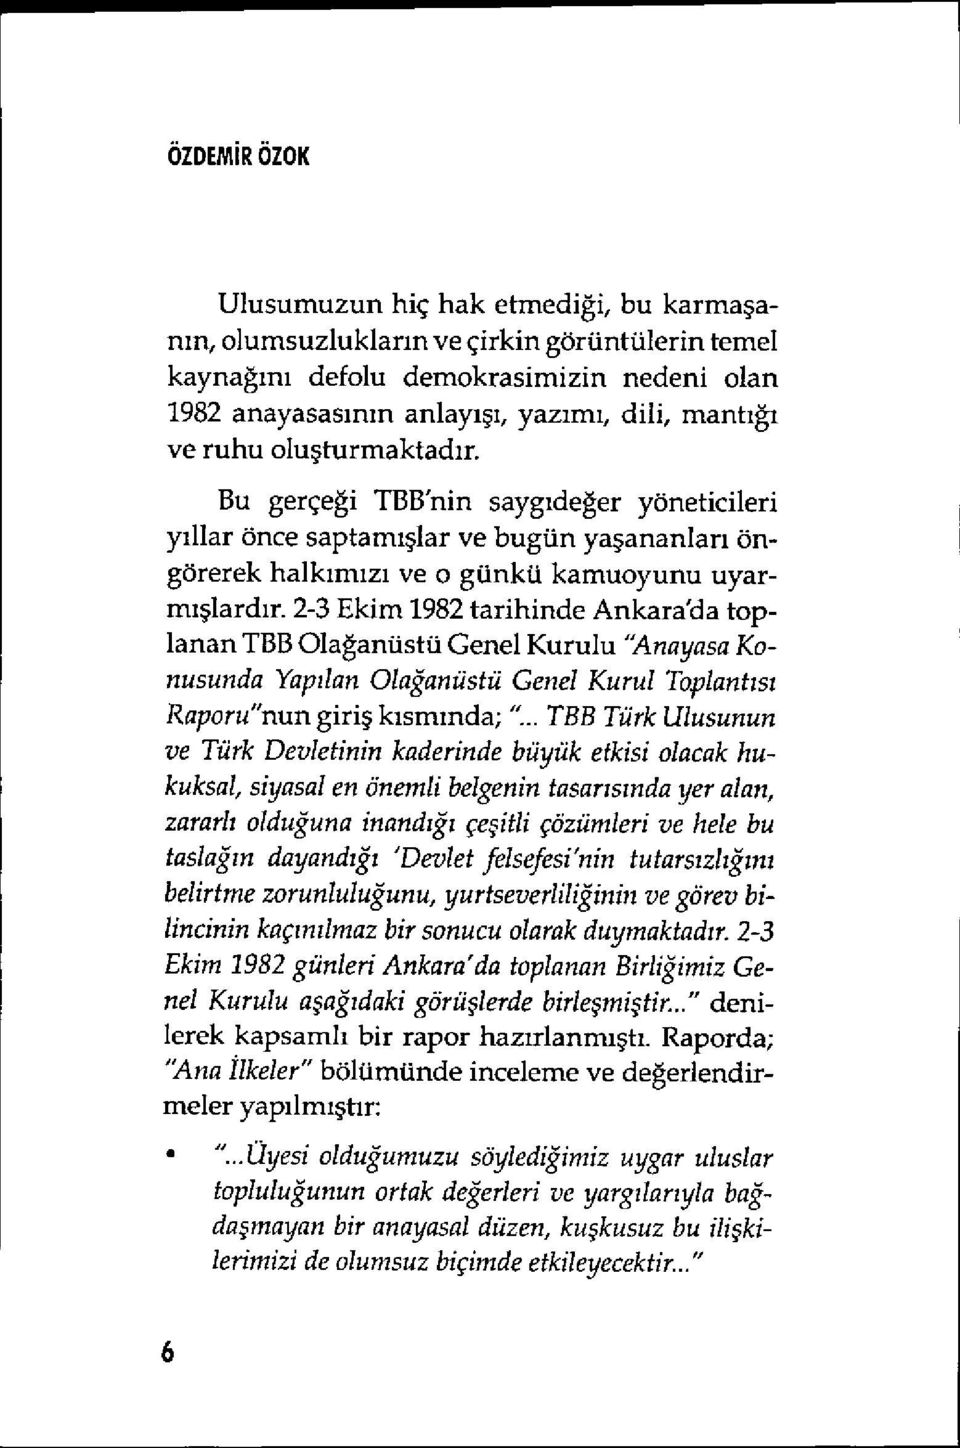 2-3 Ekim 1982 tarihinde Ankara'da toplanan TBB Olağanüstü Genel Kurulu 'Anayasa Konusunda Yap ılan Olağanüstü Genel Kurul Toplant ıs ı Raporu"nun giriş kısmında; 't.